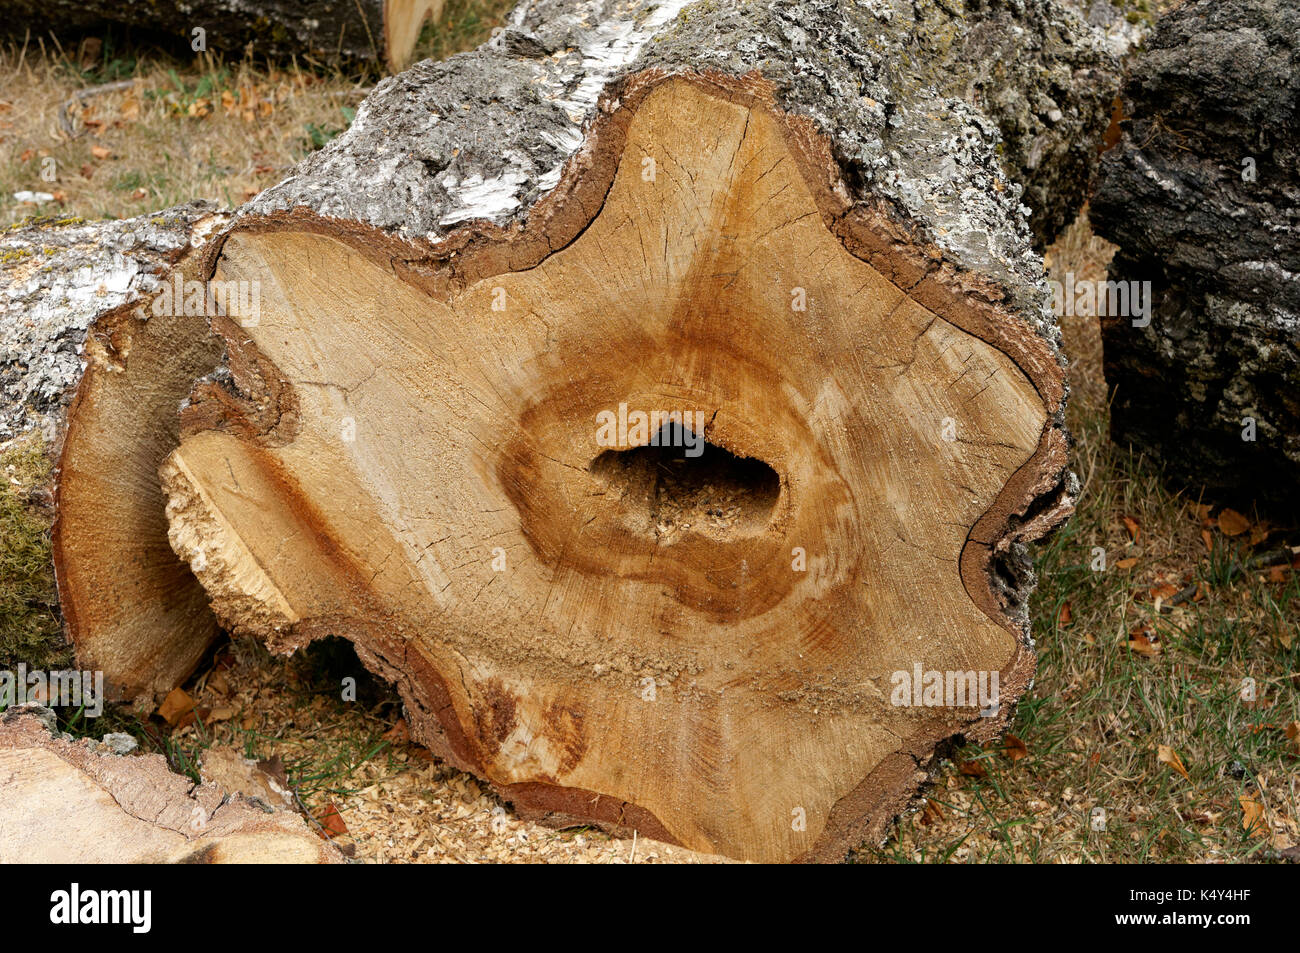 Querschnitt der Stamm eines Europäischen weiße Birke Betula pendula Baumstruktur, Herz - fäule Pilzkrankheit, Vancouver, BC, Kanada Stockfoto